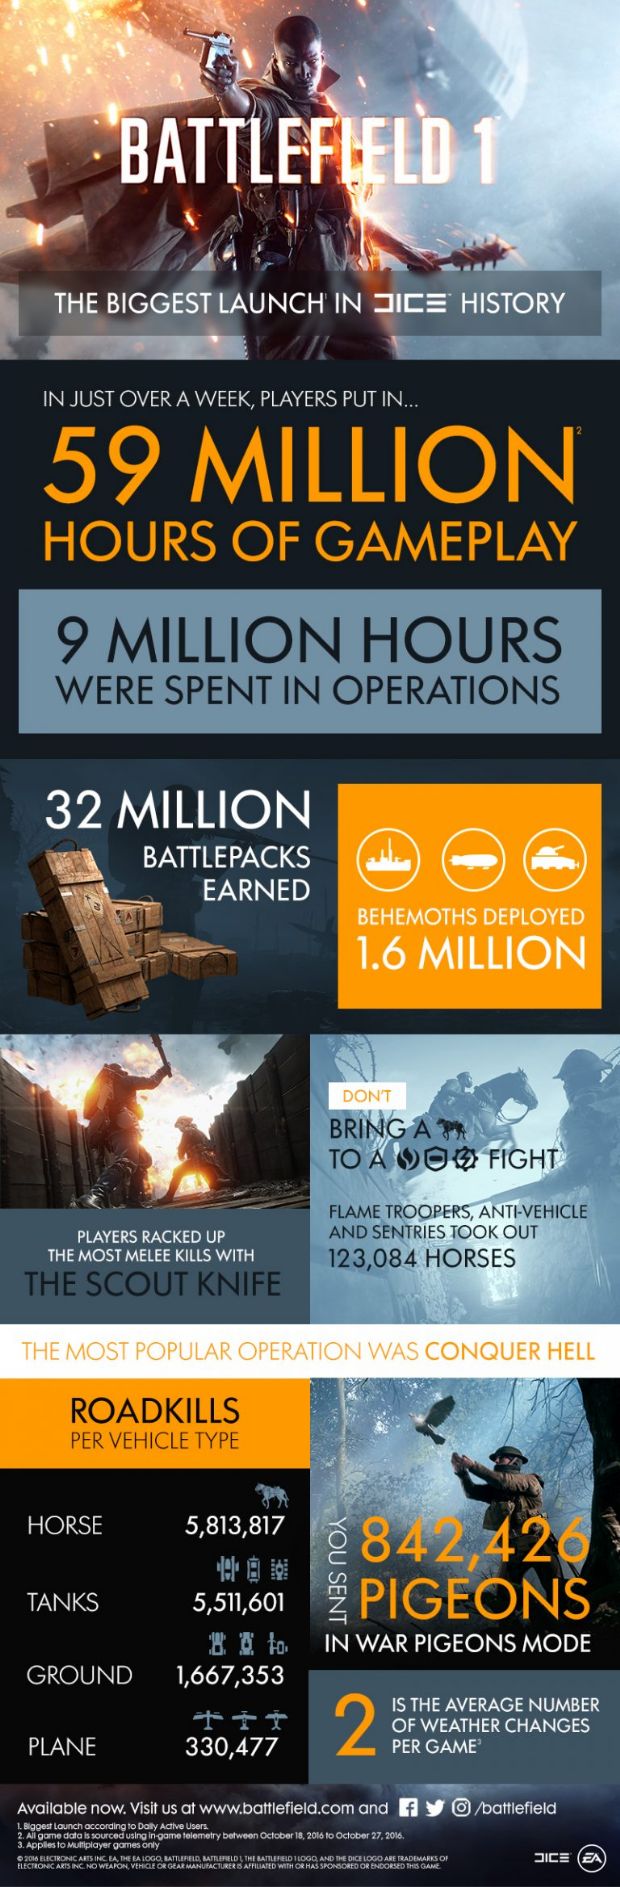 Battlefield 1, DICE'ın en hızlı satan oyunu oldu